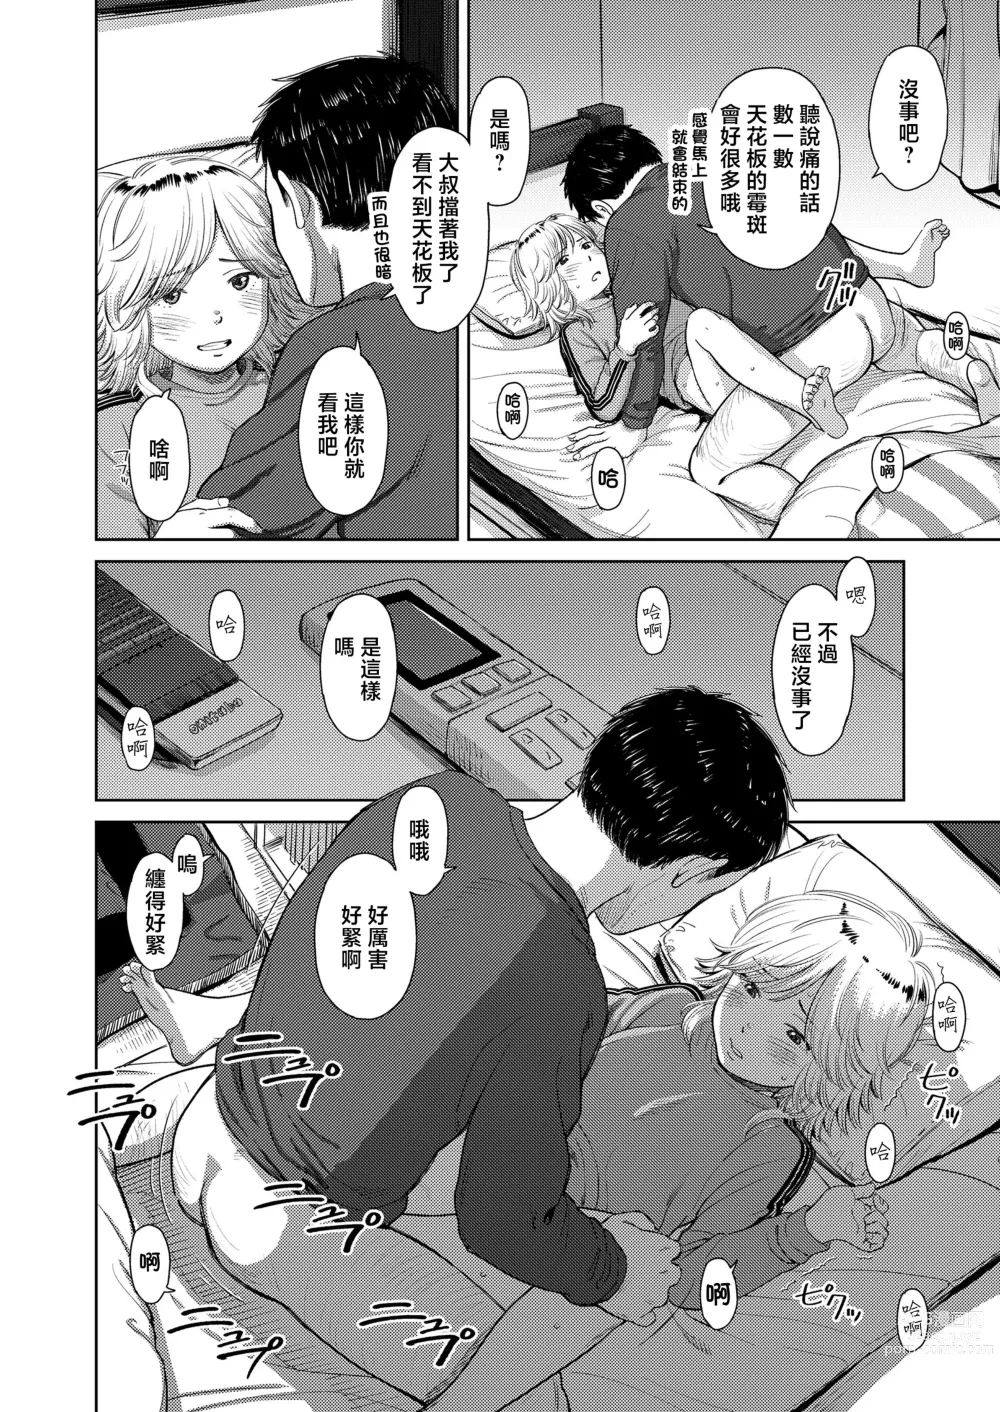 Page 16 of manga Yoru ni Houkou